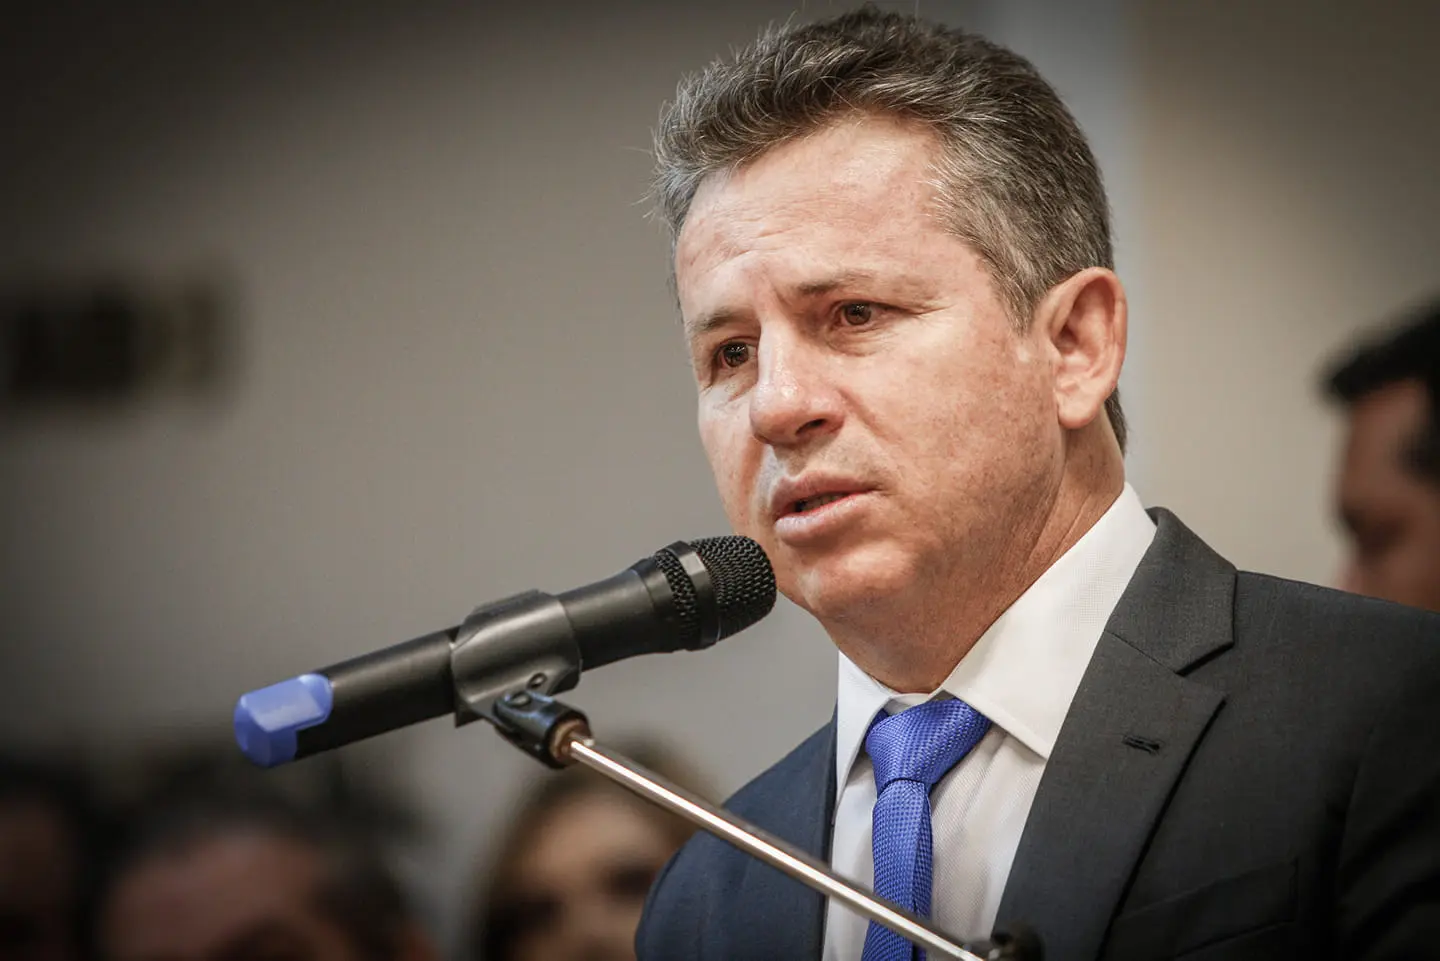 Governador Mauro Mendes critica a perda de autoridade da lei frente ao crime organizado